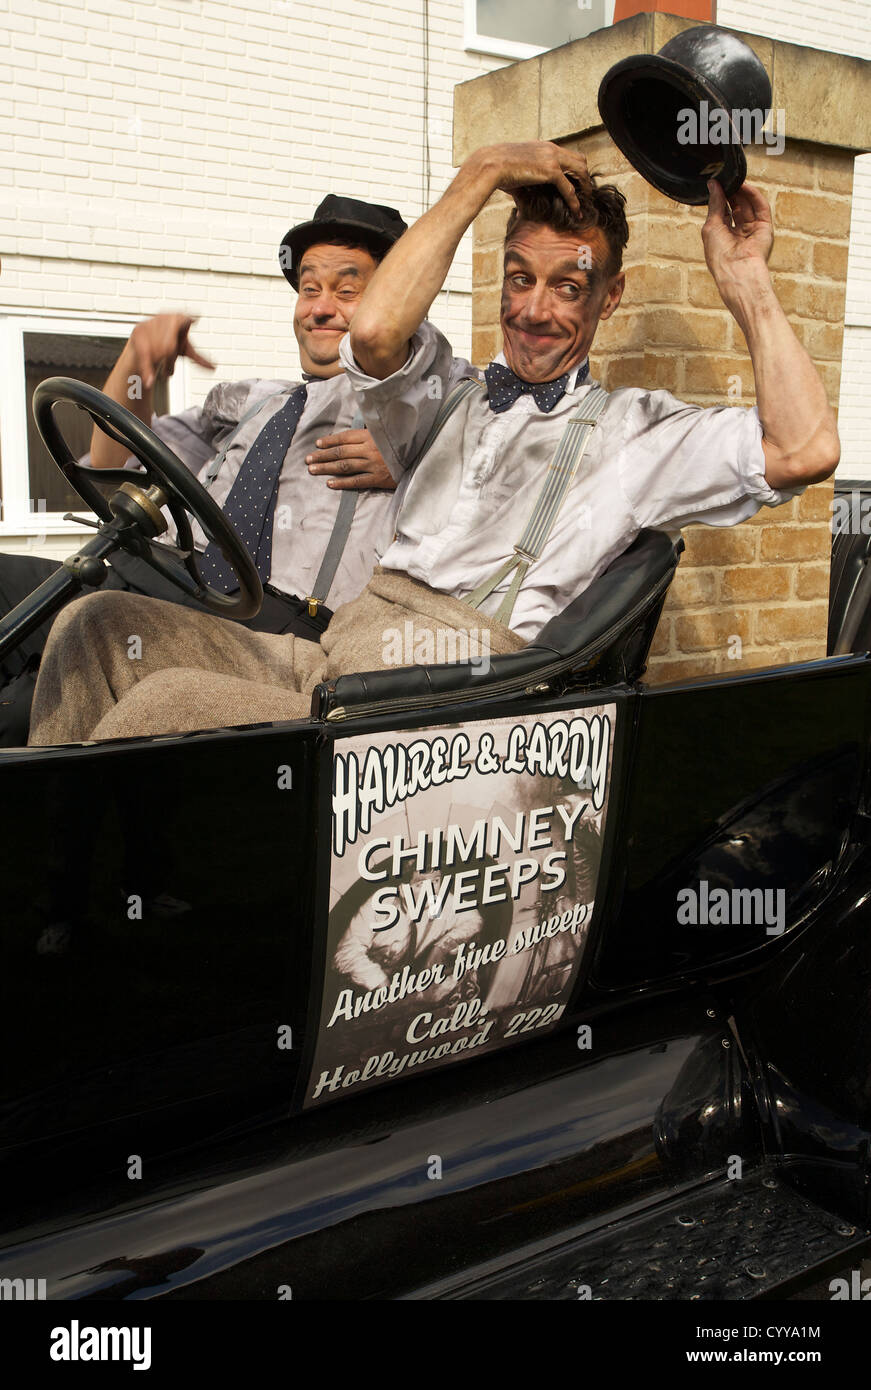 Laurel & Hardy regarder-un-aime, 'Haurel & Lardy', à Goodwood Revival 2012 Banque D'Images